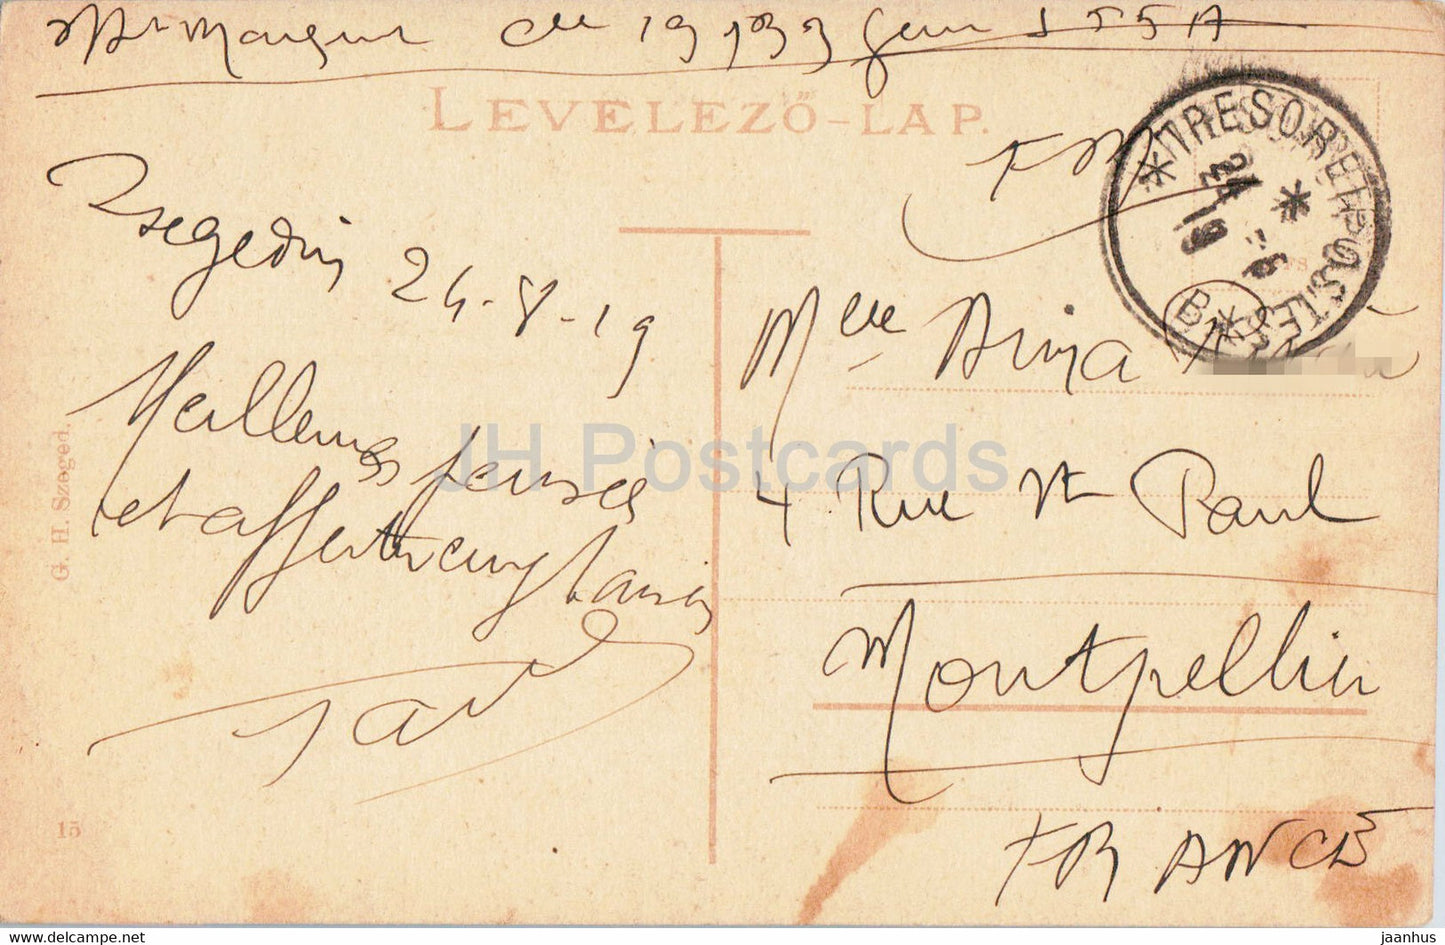 Szeged - Varosi szinhaz - théâtre - carte postale ancienne - 1919 - Hongrie - utilisé